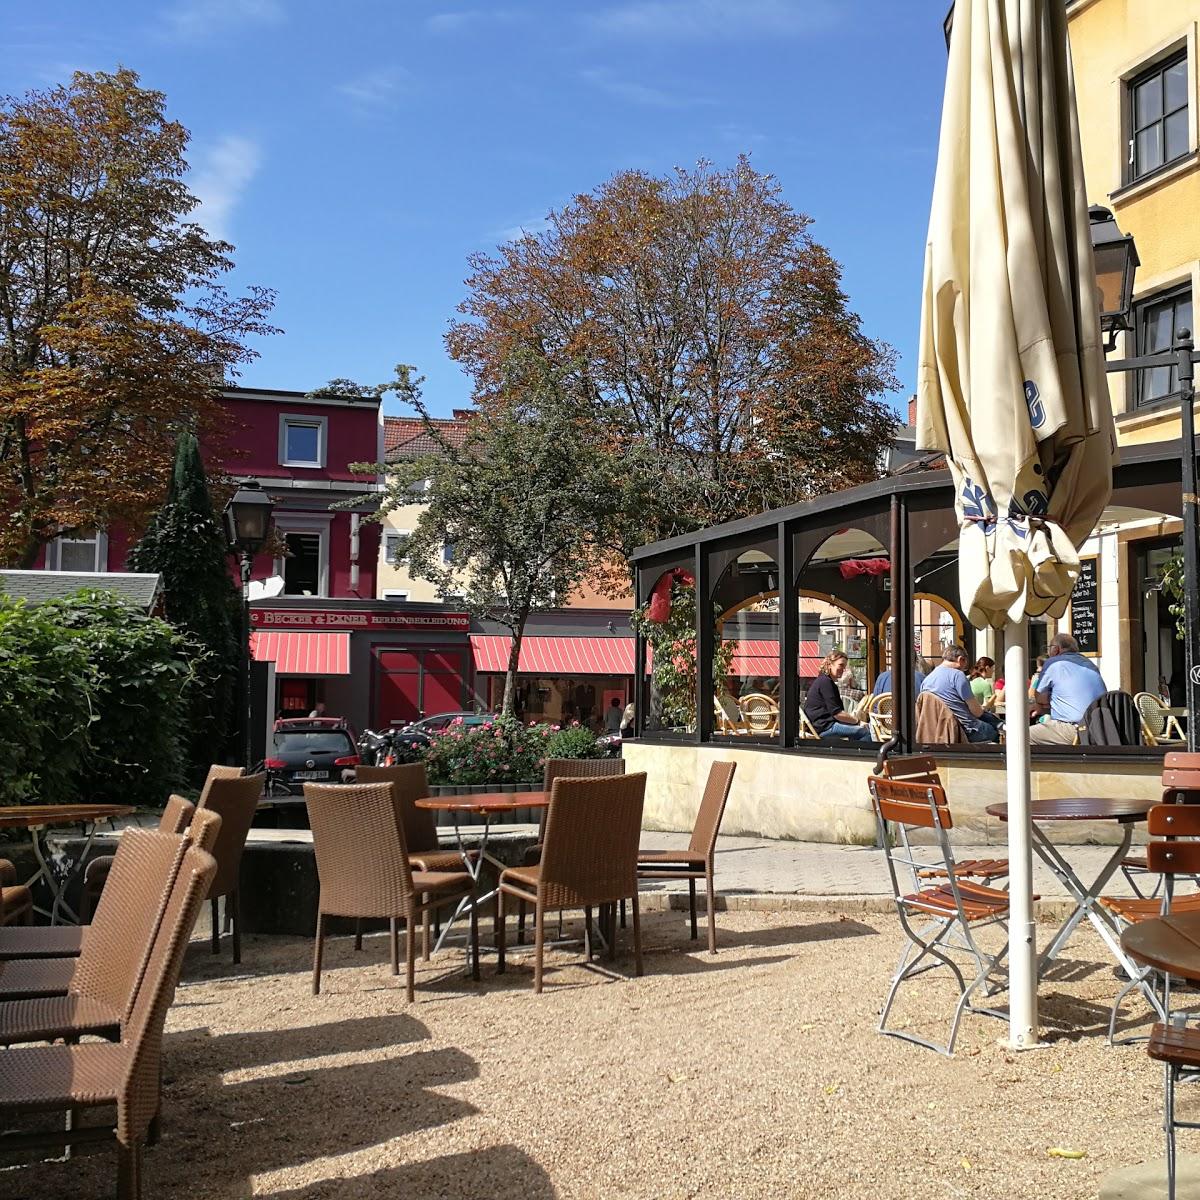 Restaurant "Café Florian" in Bayreuth